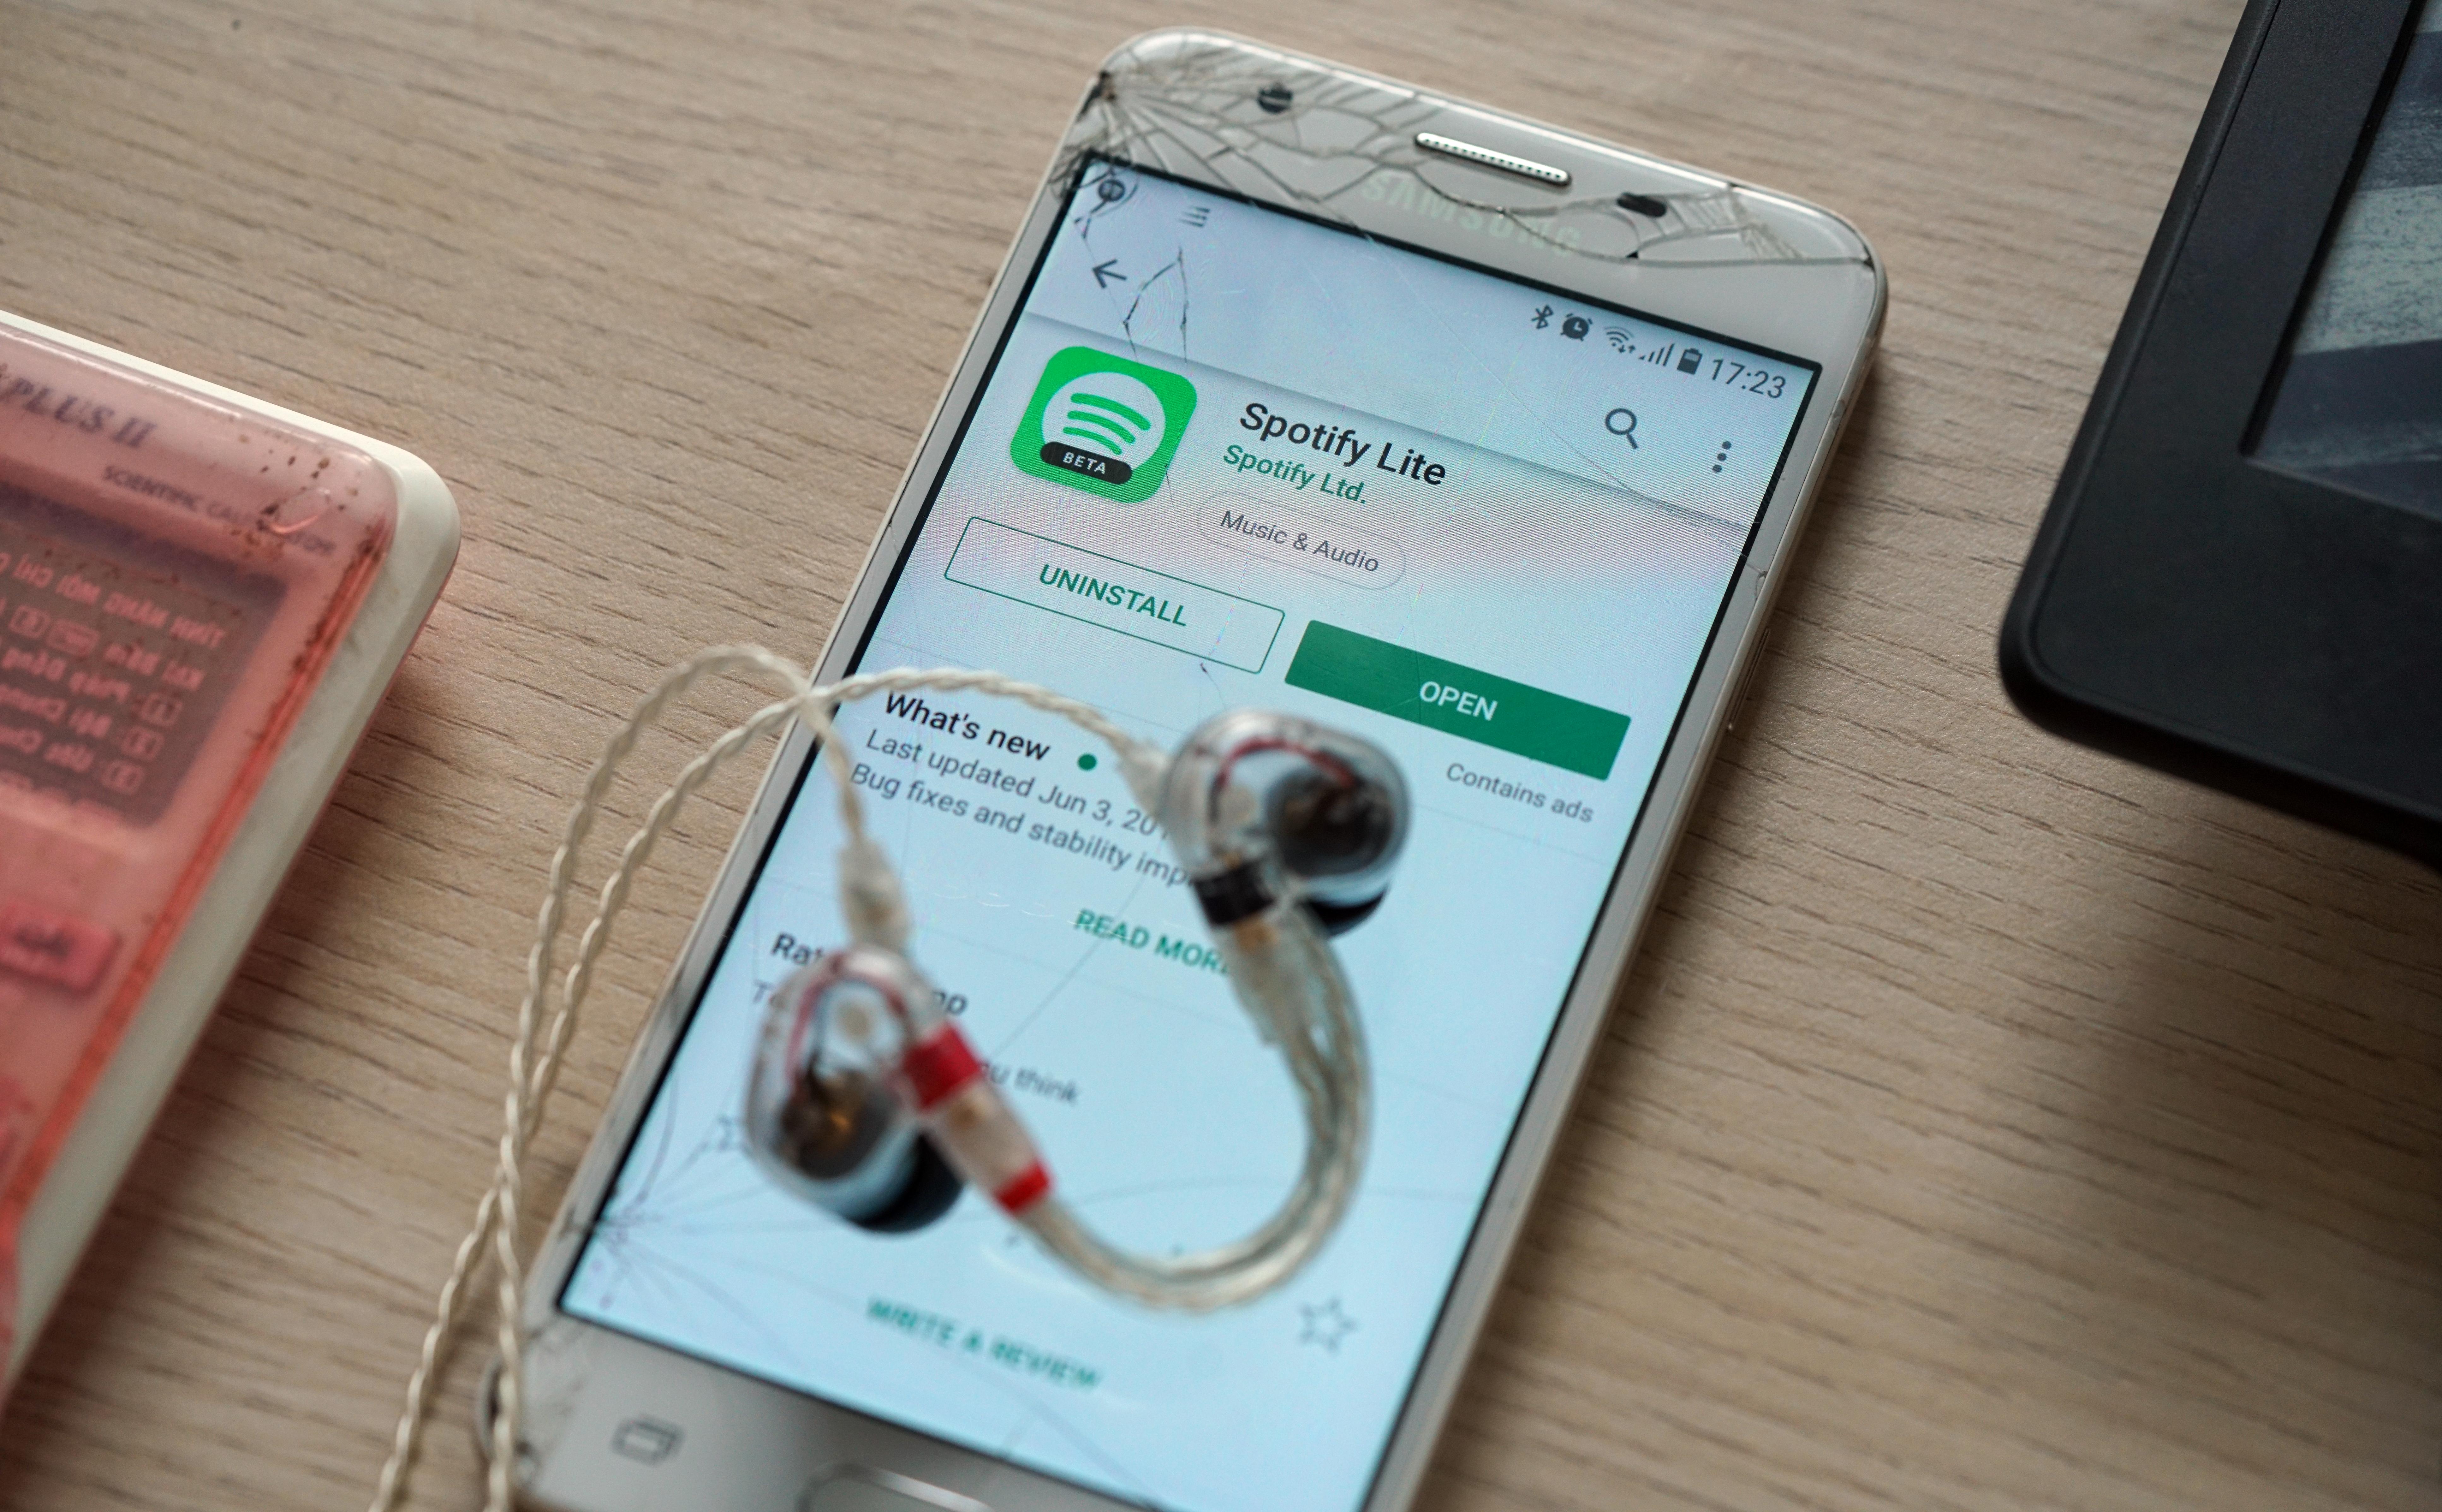 Nhạc luôn là một phần không thể thiếu trong cuộc sống của chúng ta, và Spotify Lite là một ứng dụng hữu ích giúp bạn có thể thỏa sức thưởng thức các bản nhạc yêu thích. Không chỉ tiết kiệm pin mà còn có thể lưu trữ nhiều bài hát, thật tuyệt vời phải không nào? Hãy vào hình liên quan để biết thêm thông tin nhé!